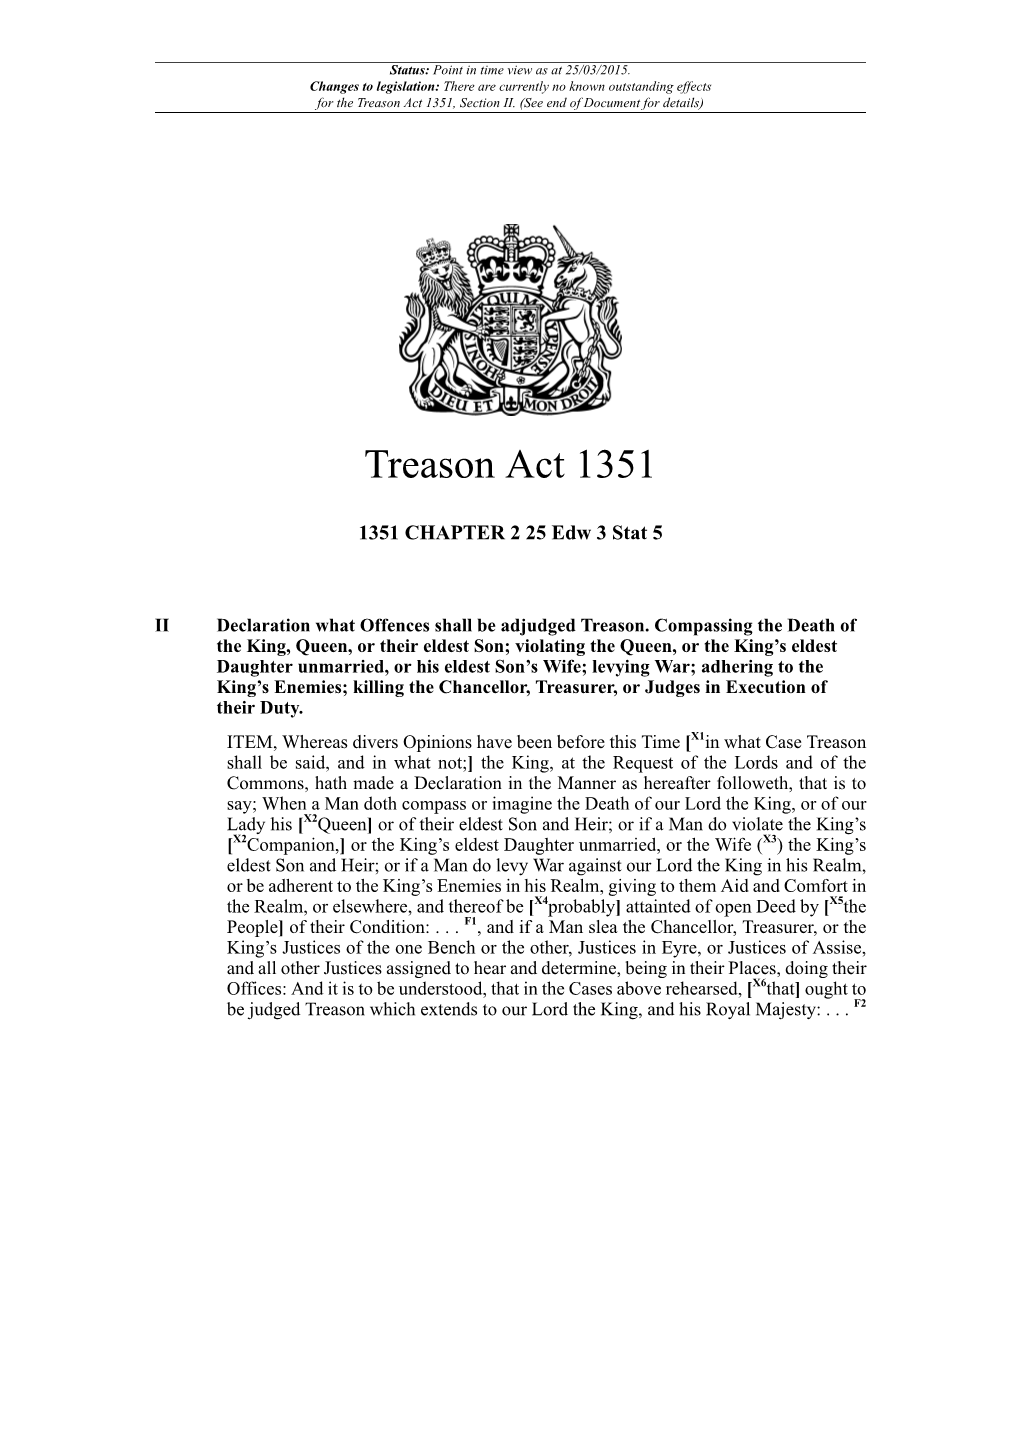 Treason Act 1351, Section II